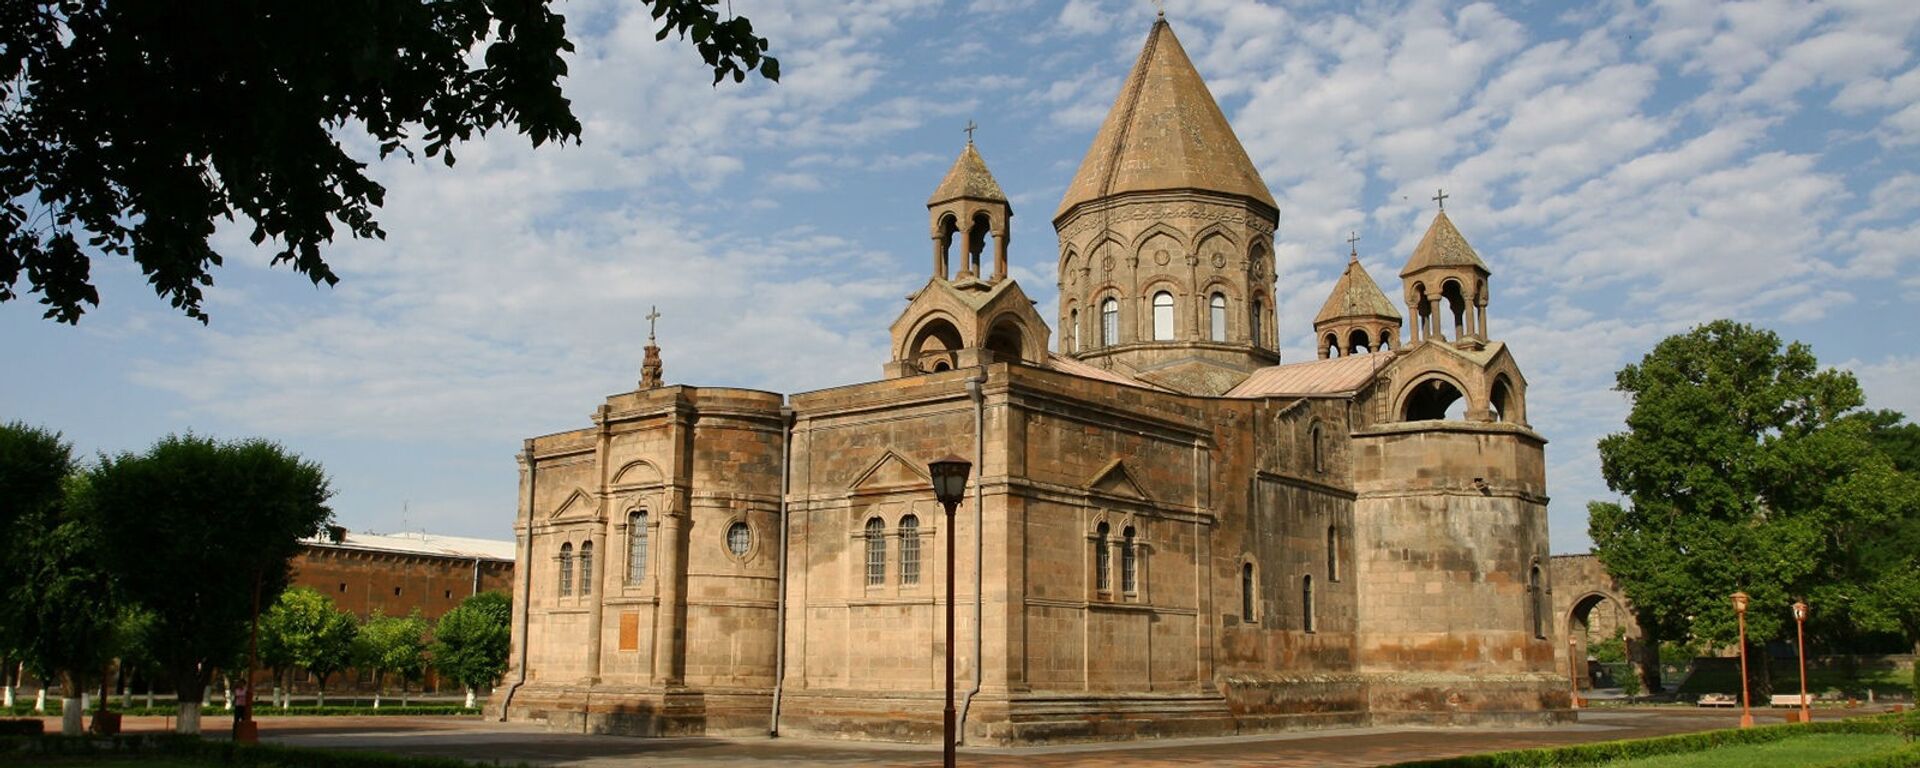 Эчмиадзинский монастырь - Sputnik Արմենիա, 1920, 11.06.2021